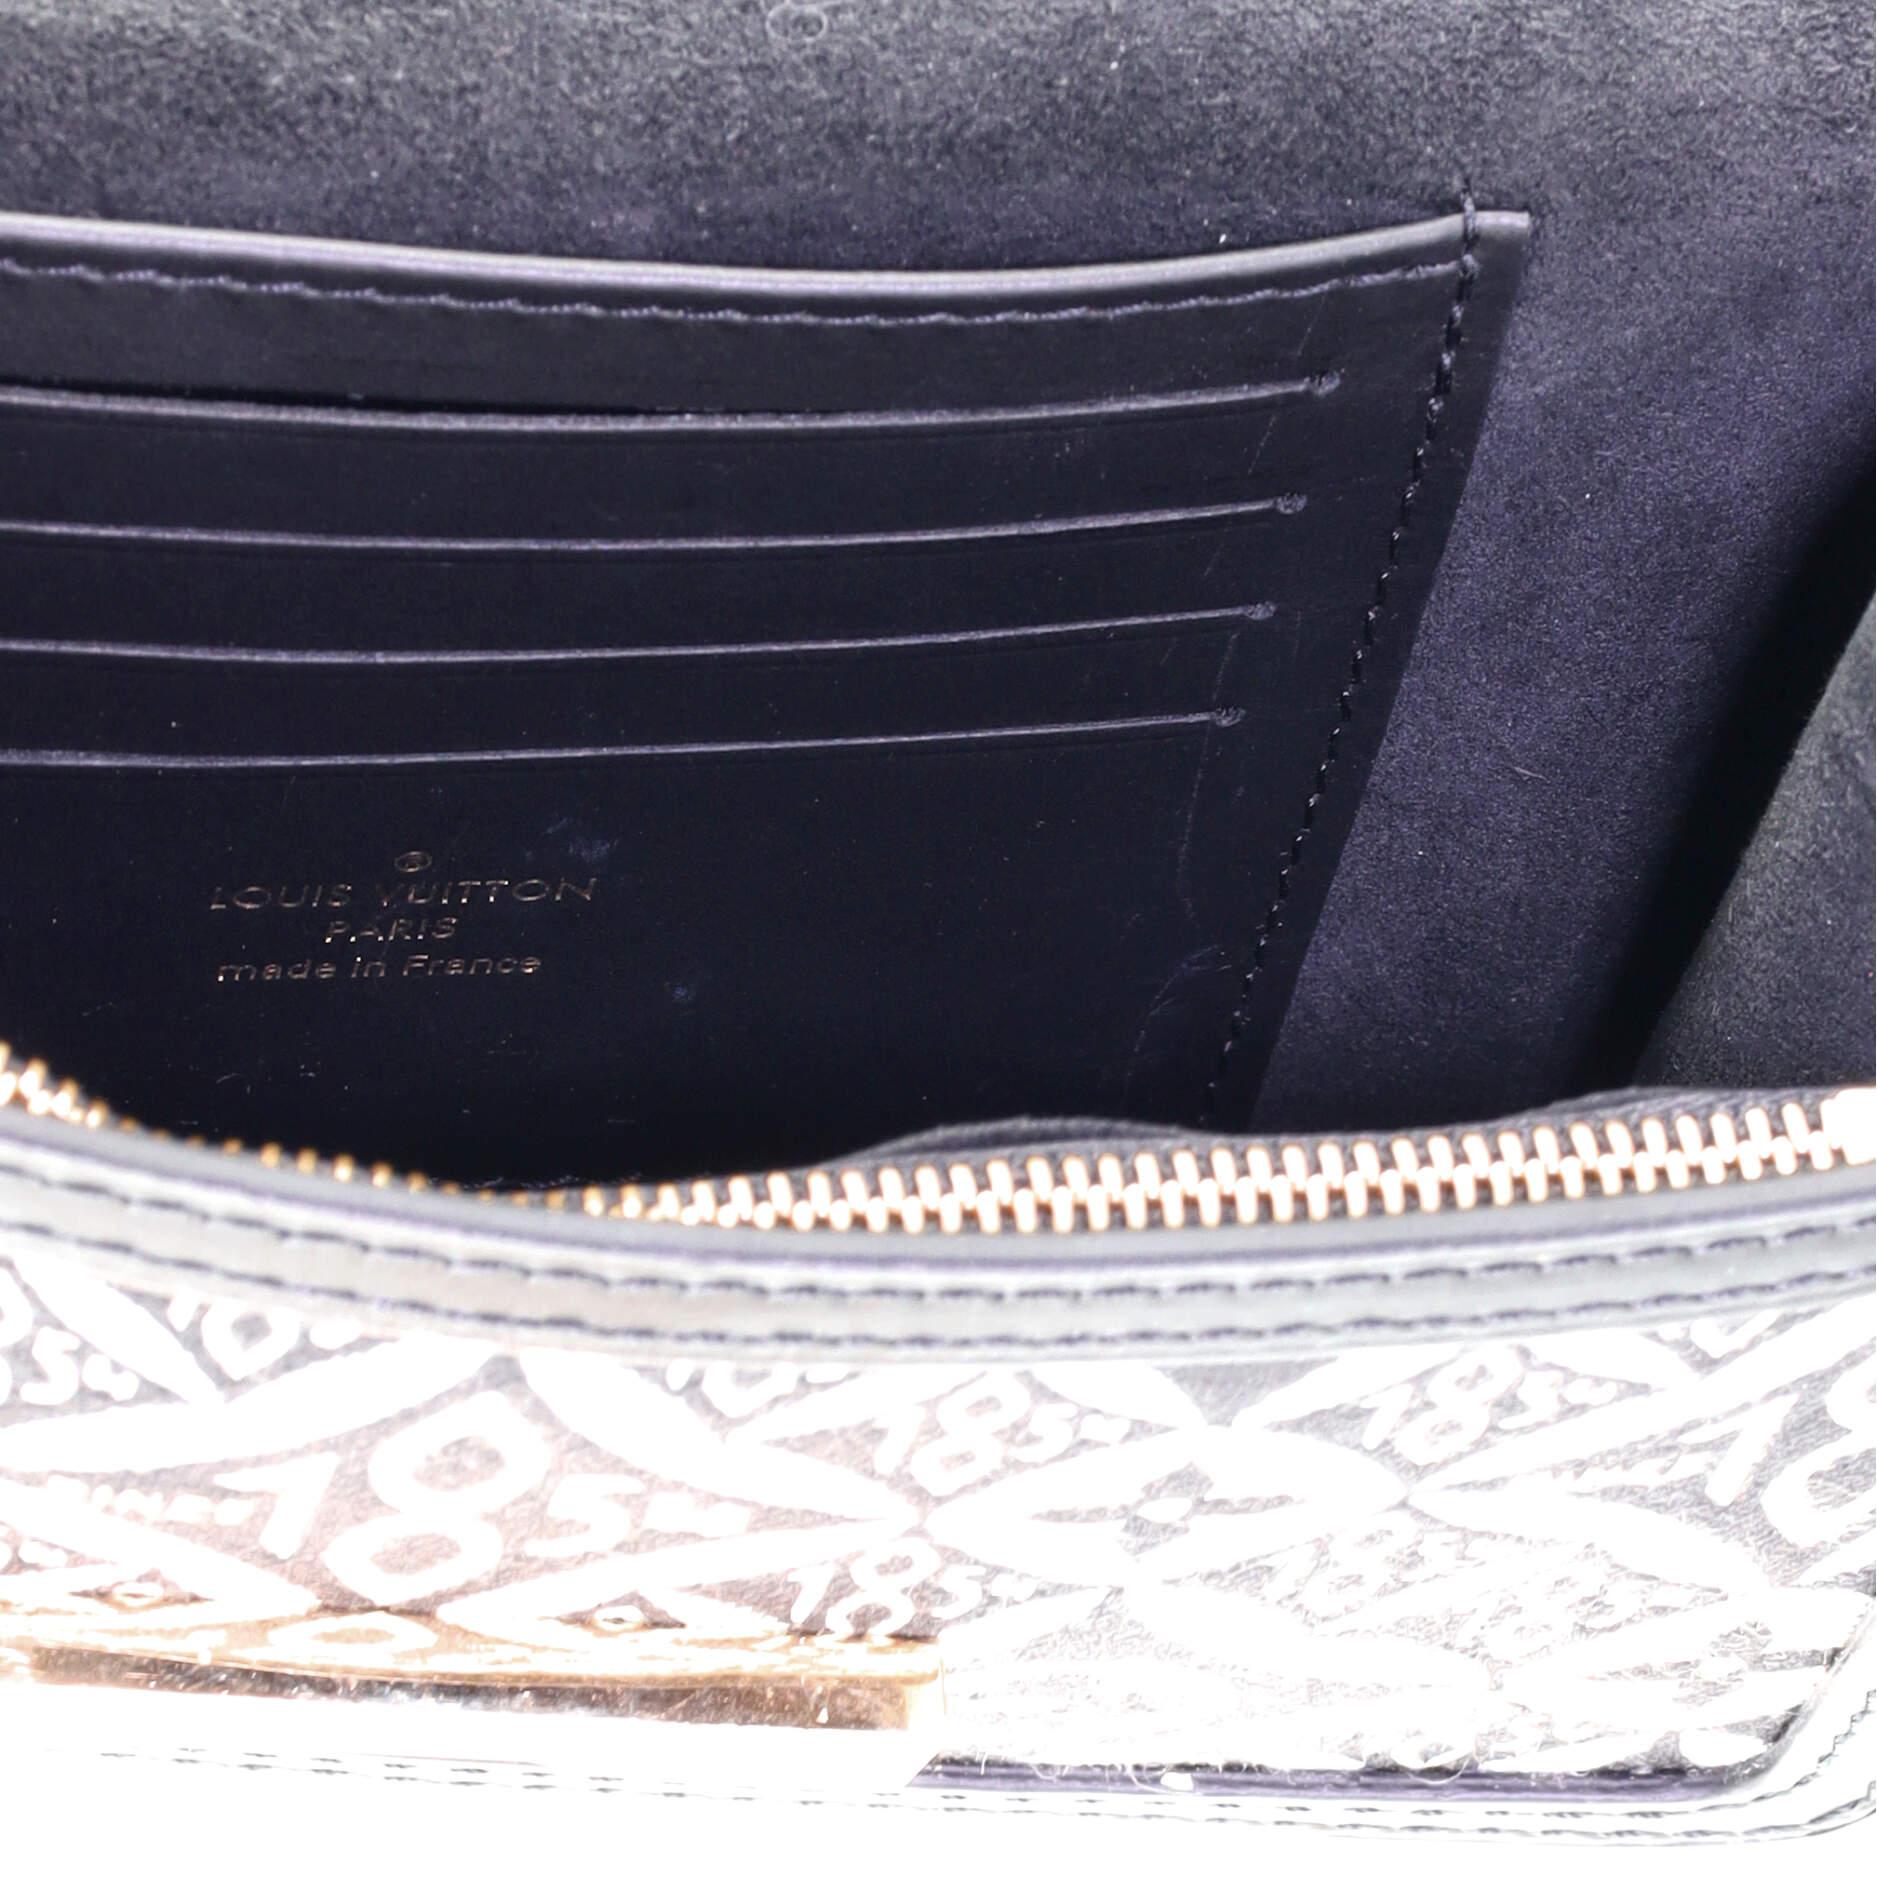 Black Louis Vuitton Dauphine Chain Wallet Limited Edition Since 1854 Monogram Jacquard